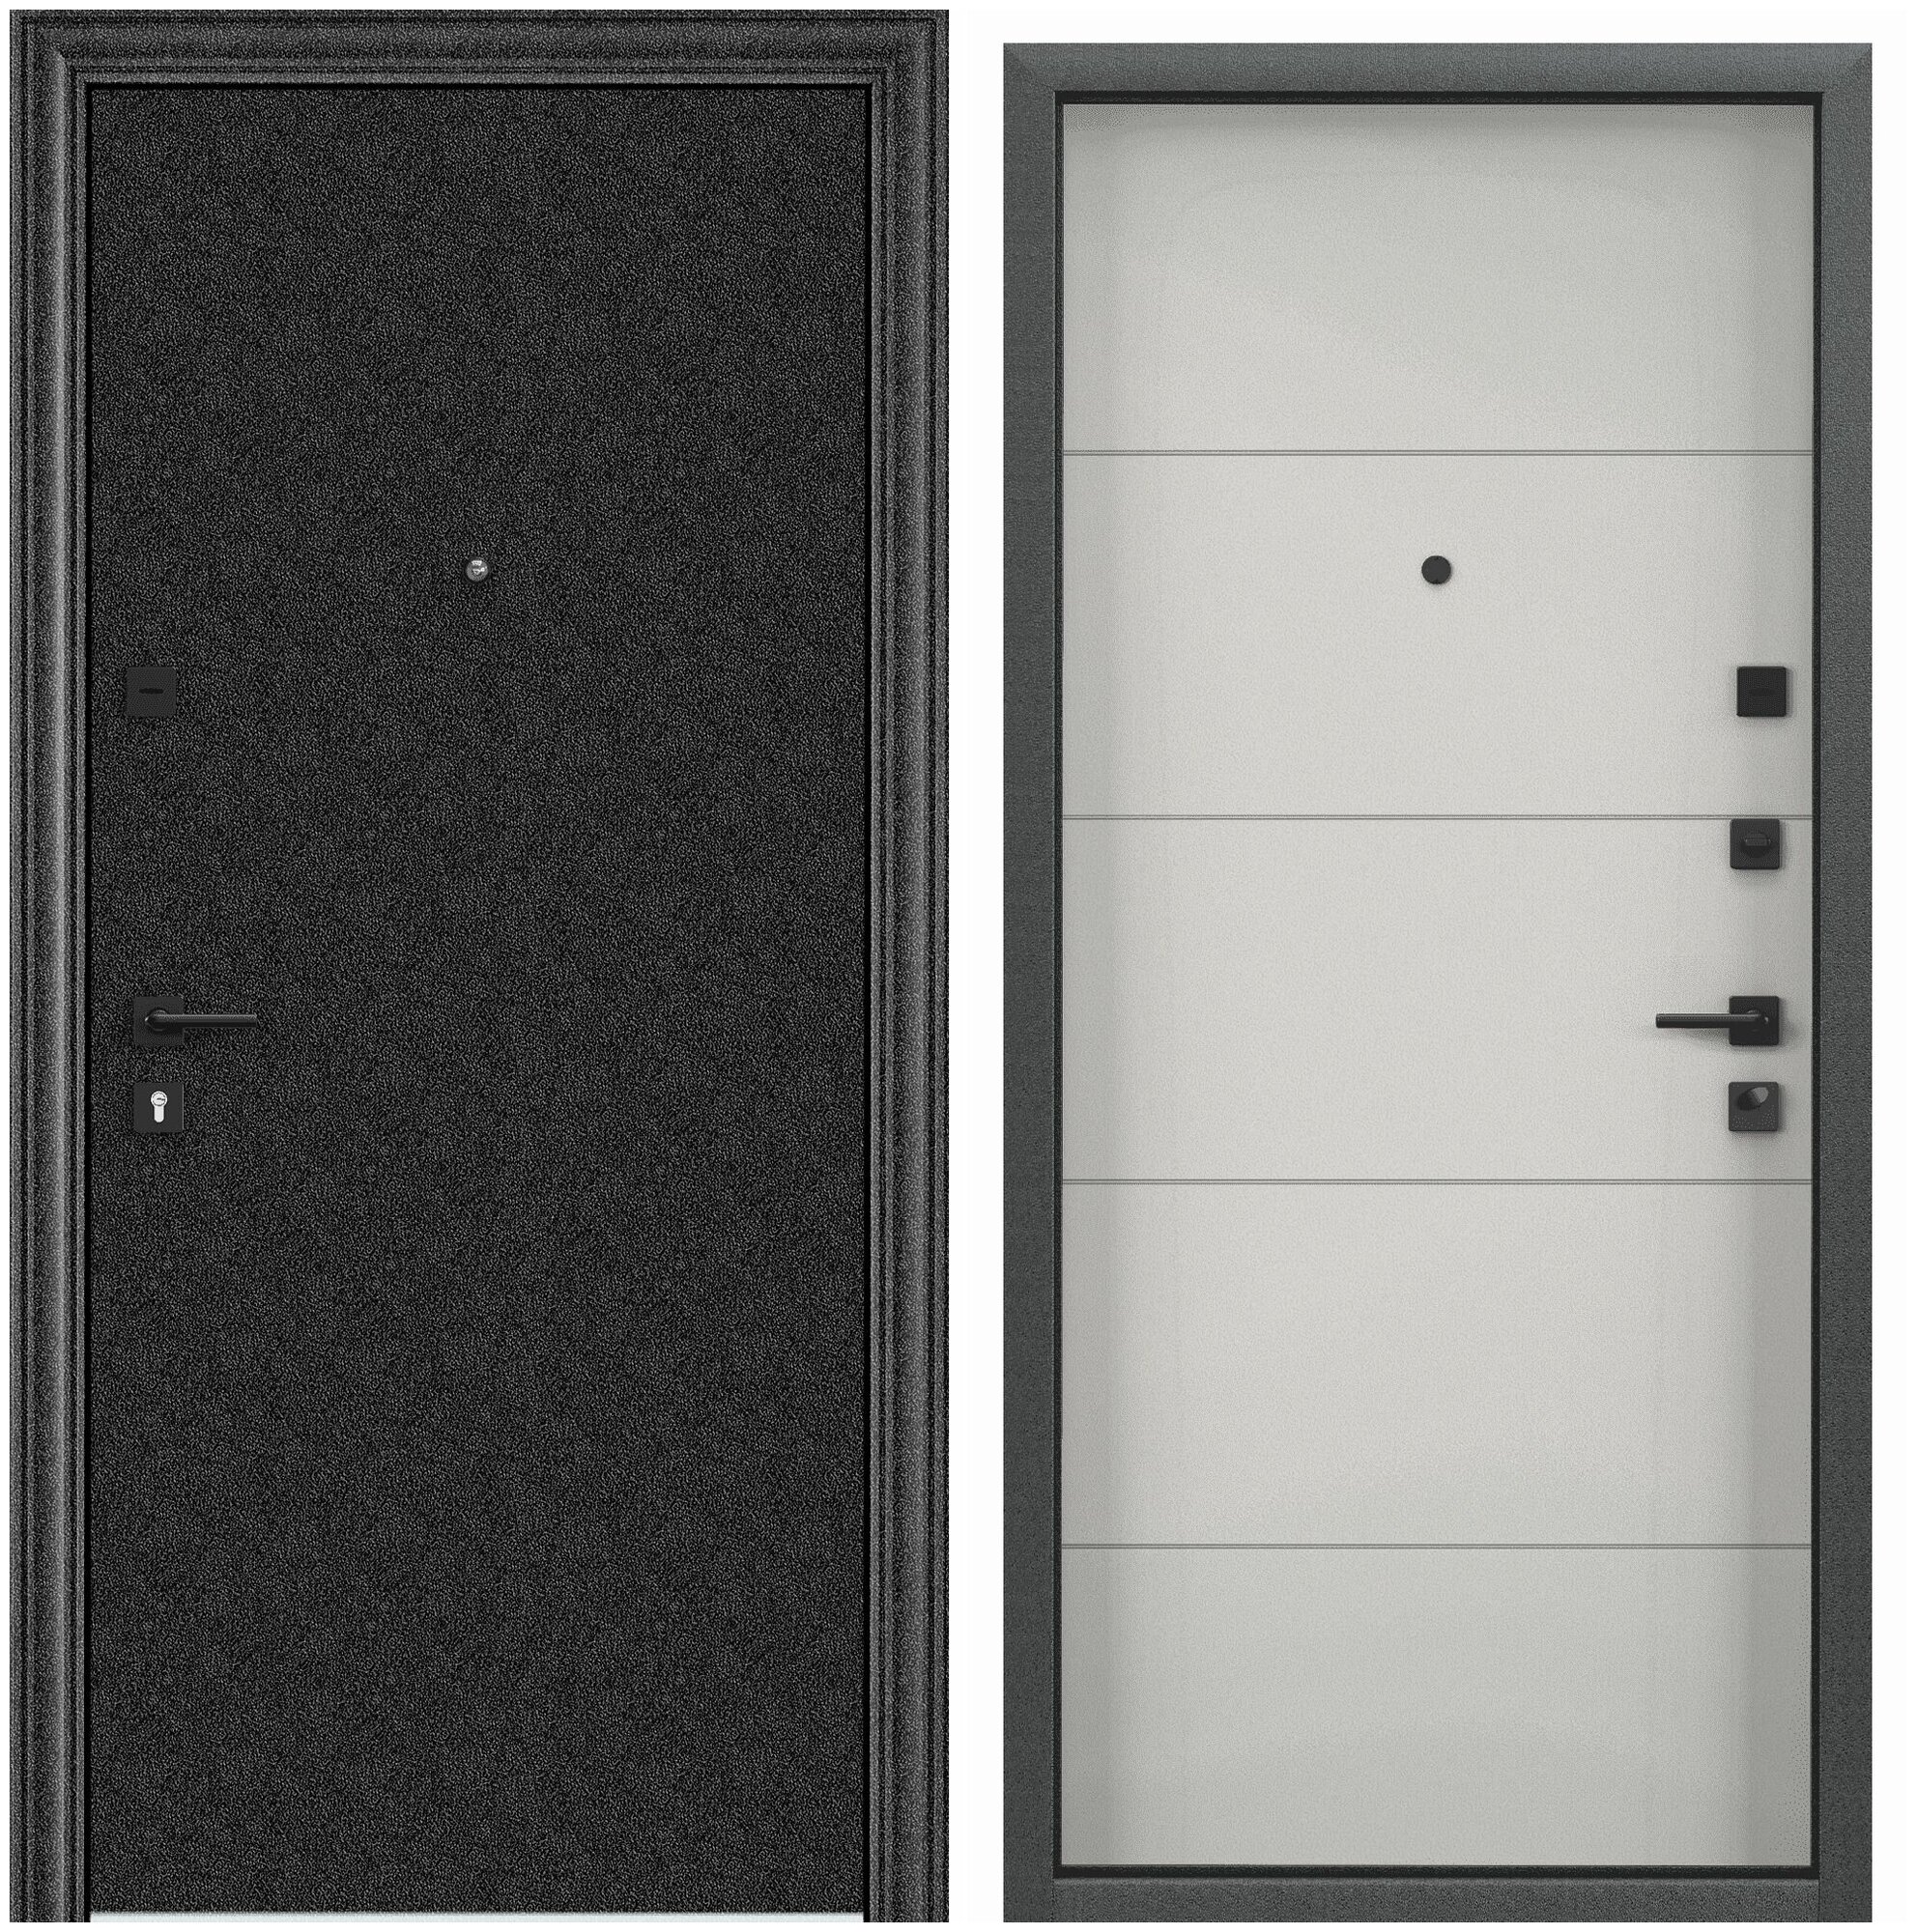 Дверь входная для квартиры Torex Flat-M 860х2050, правый, тепло-шумоизоляция, антикоррозийная защита, замки 4-го и 2-го класса защиты, черный/белый